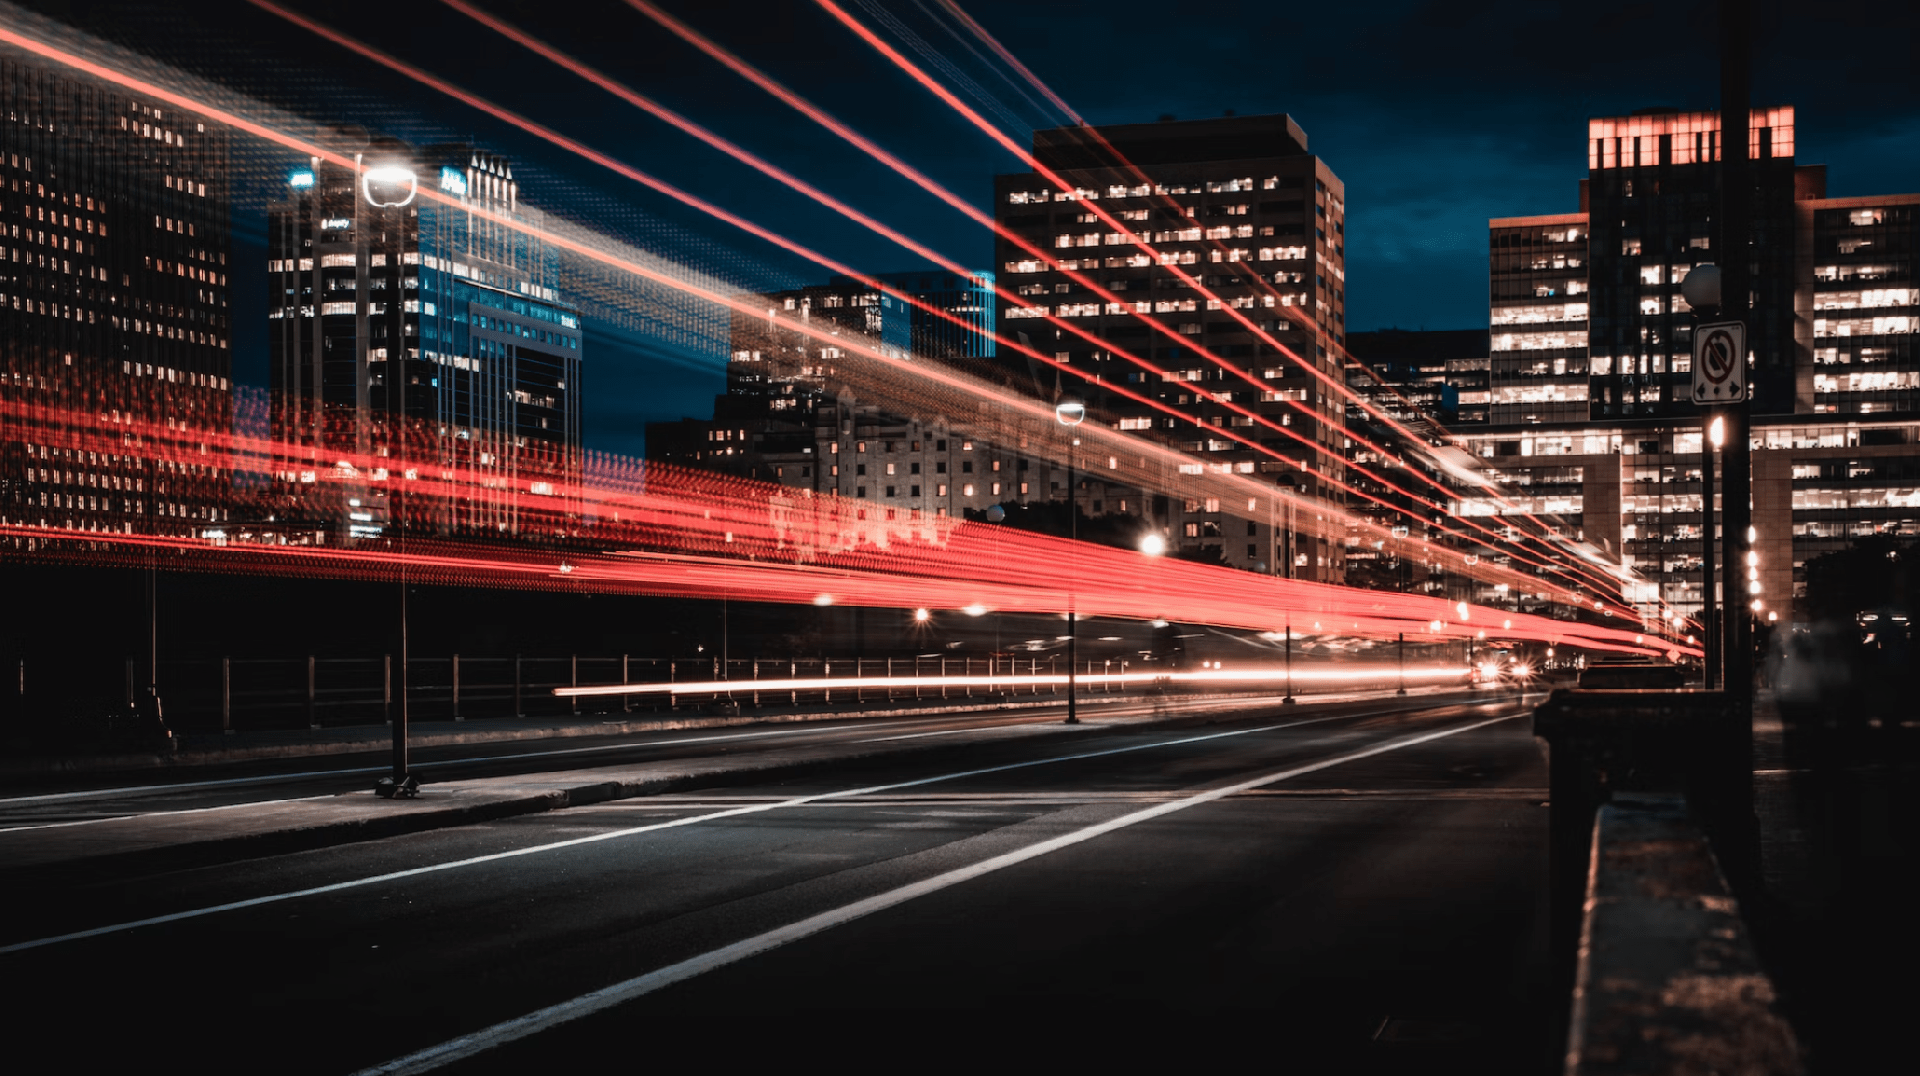  Tet testē datu pārraides bezvada savienojumu ar optikas ātrumu viedās pilsētas risinājumu atbalstam Ķīpsalā